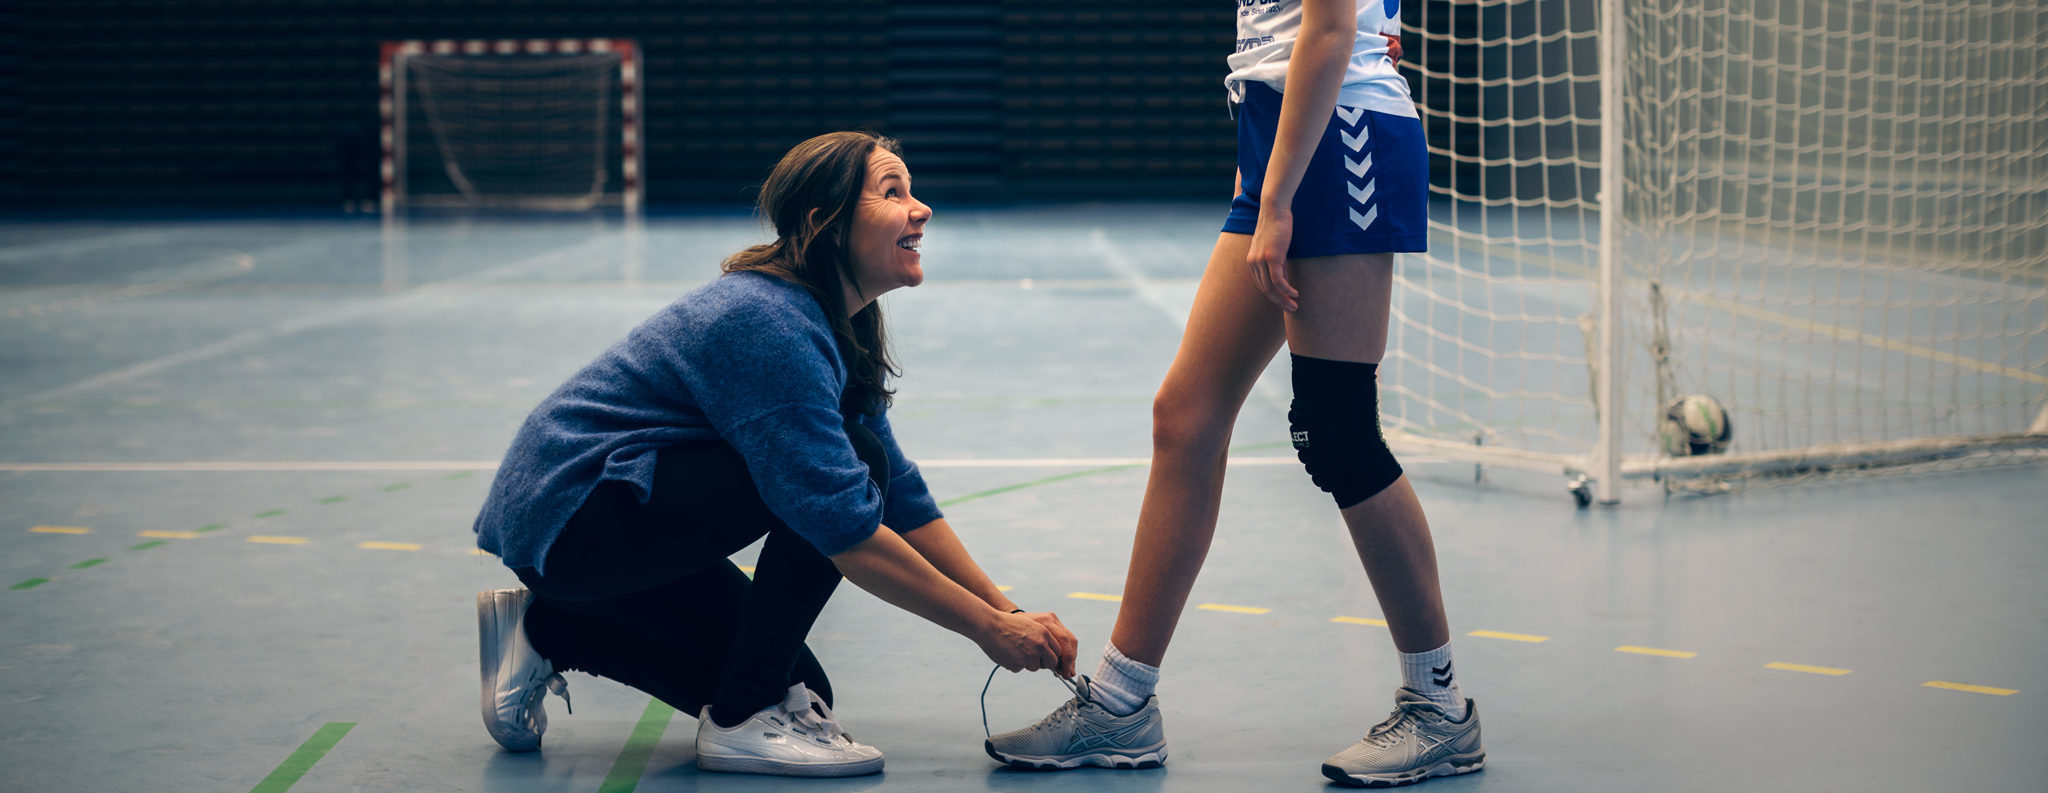 Bilde av trener som knytter lissen på en jente som spiller håndball.